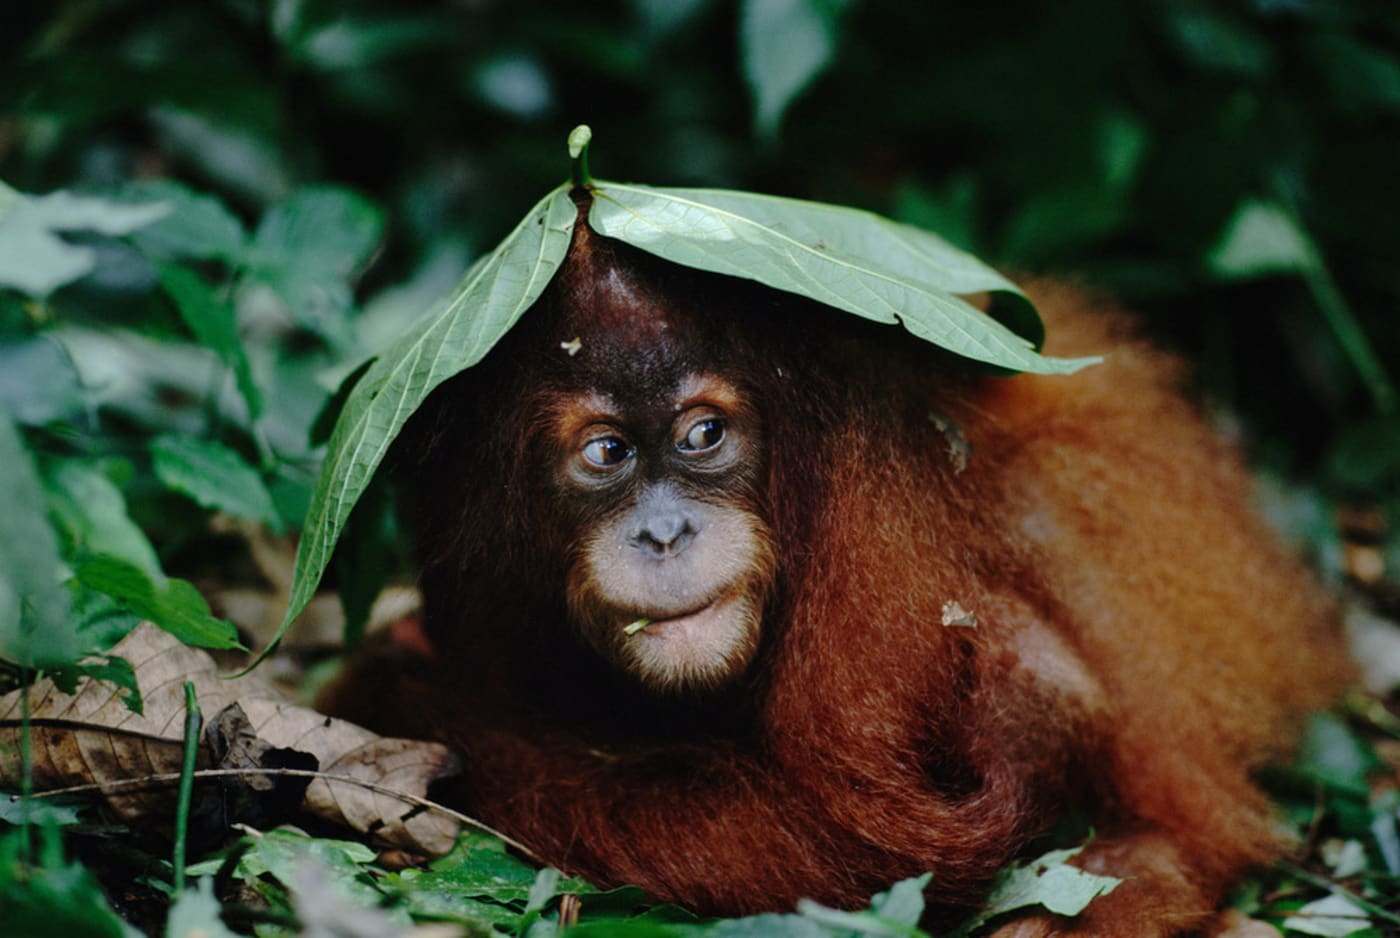 Orangutan hides under leaf